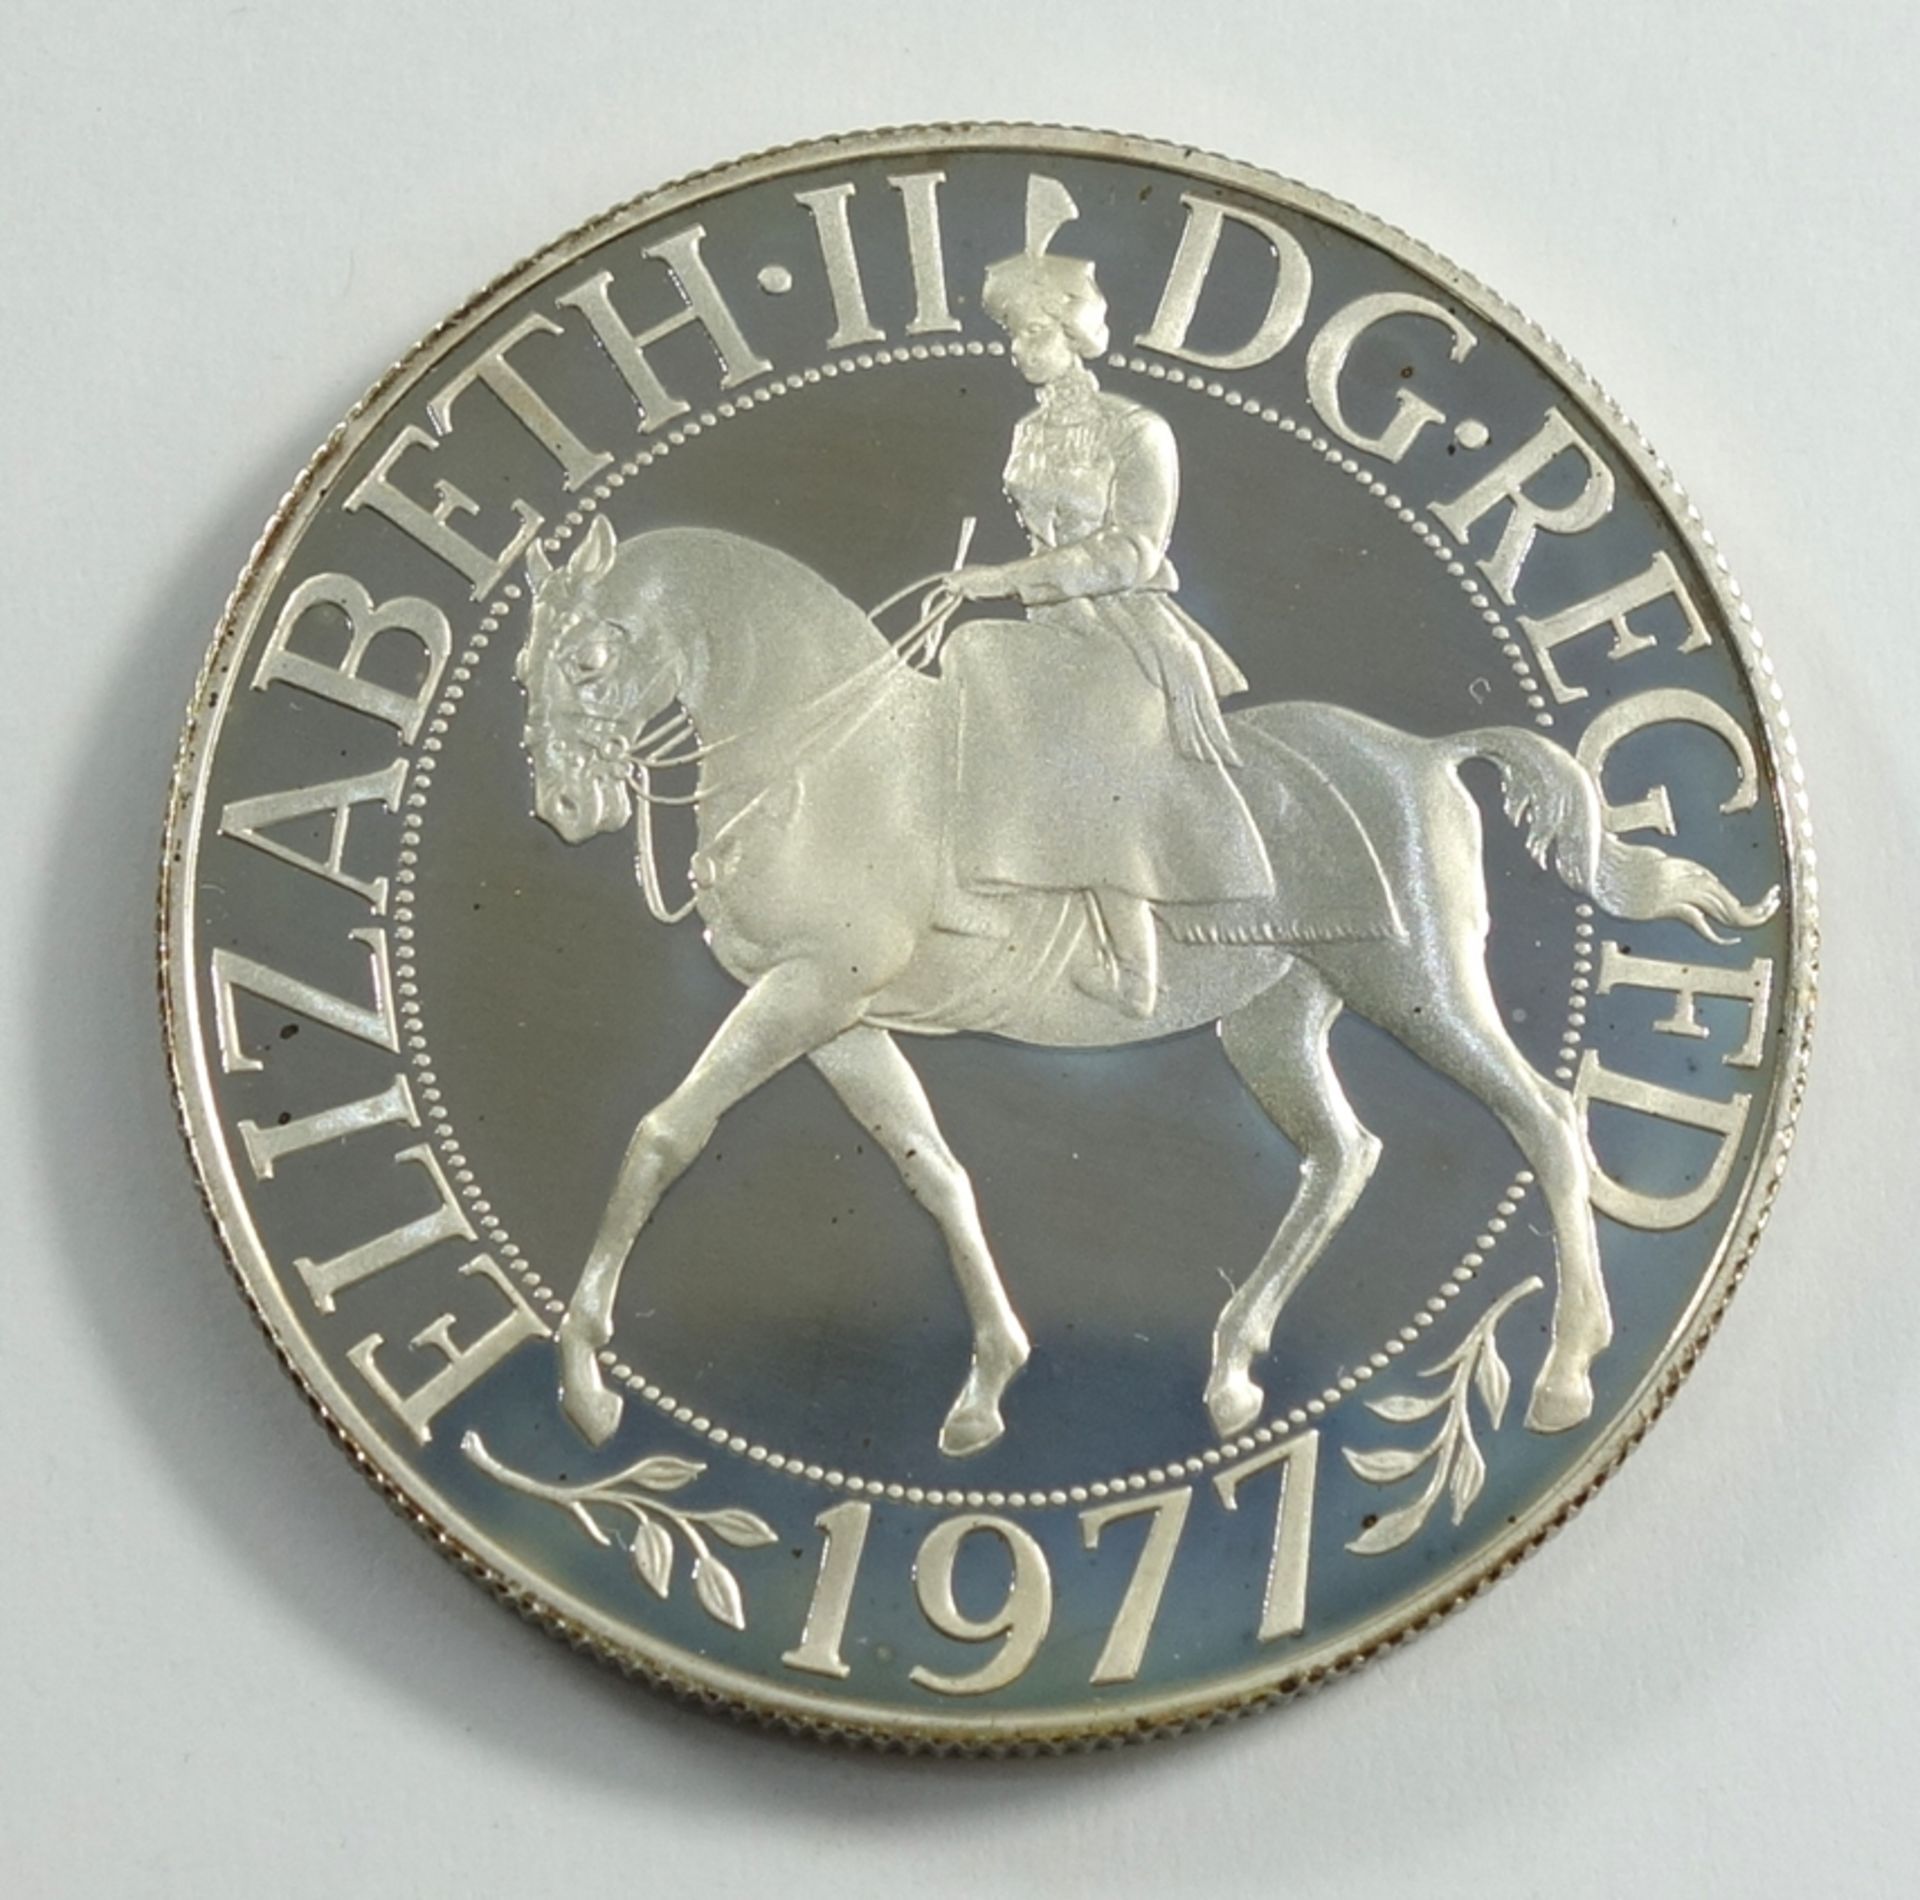 Gedenkmünze, Großbritannien 25 Pence, 1977, 25 Jahre Regierungszeit, Kupfer-Nickel-Legierung, vz, im